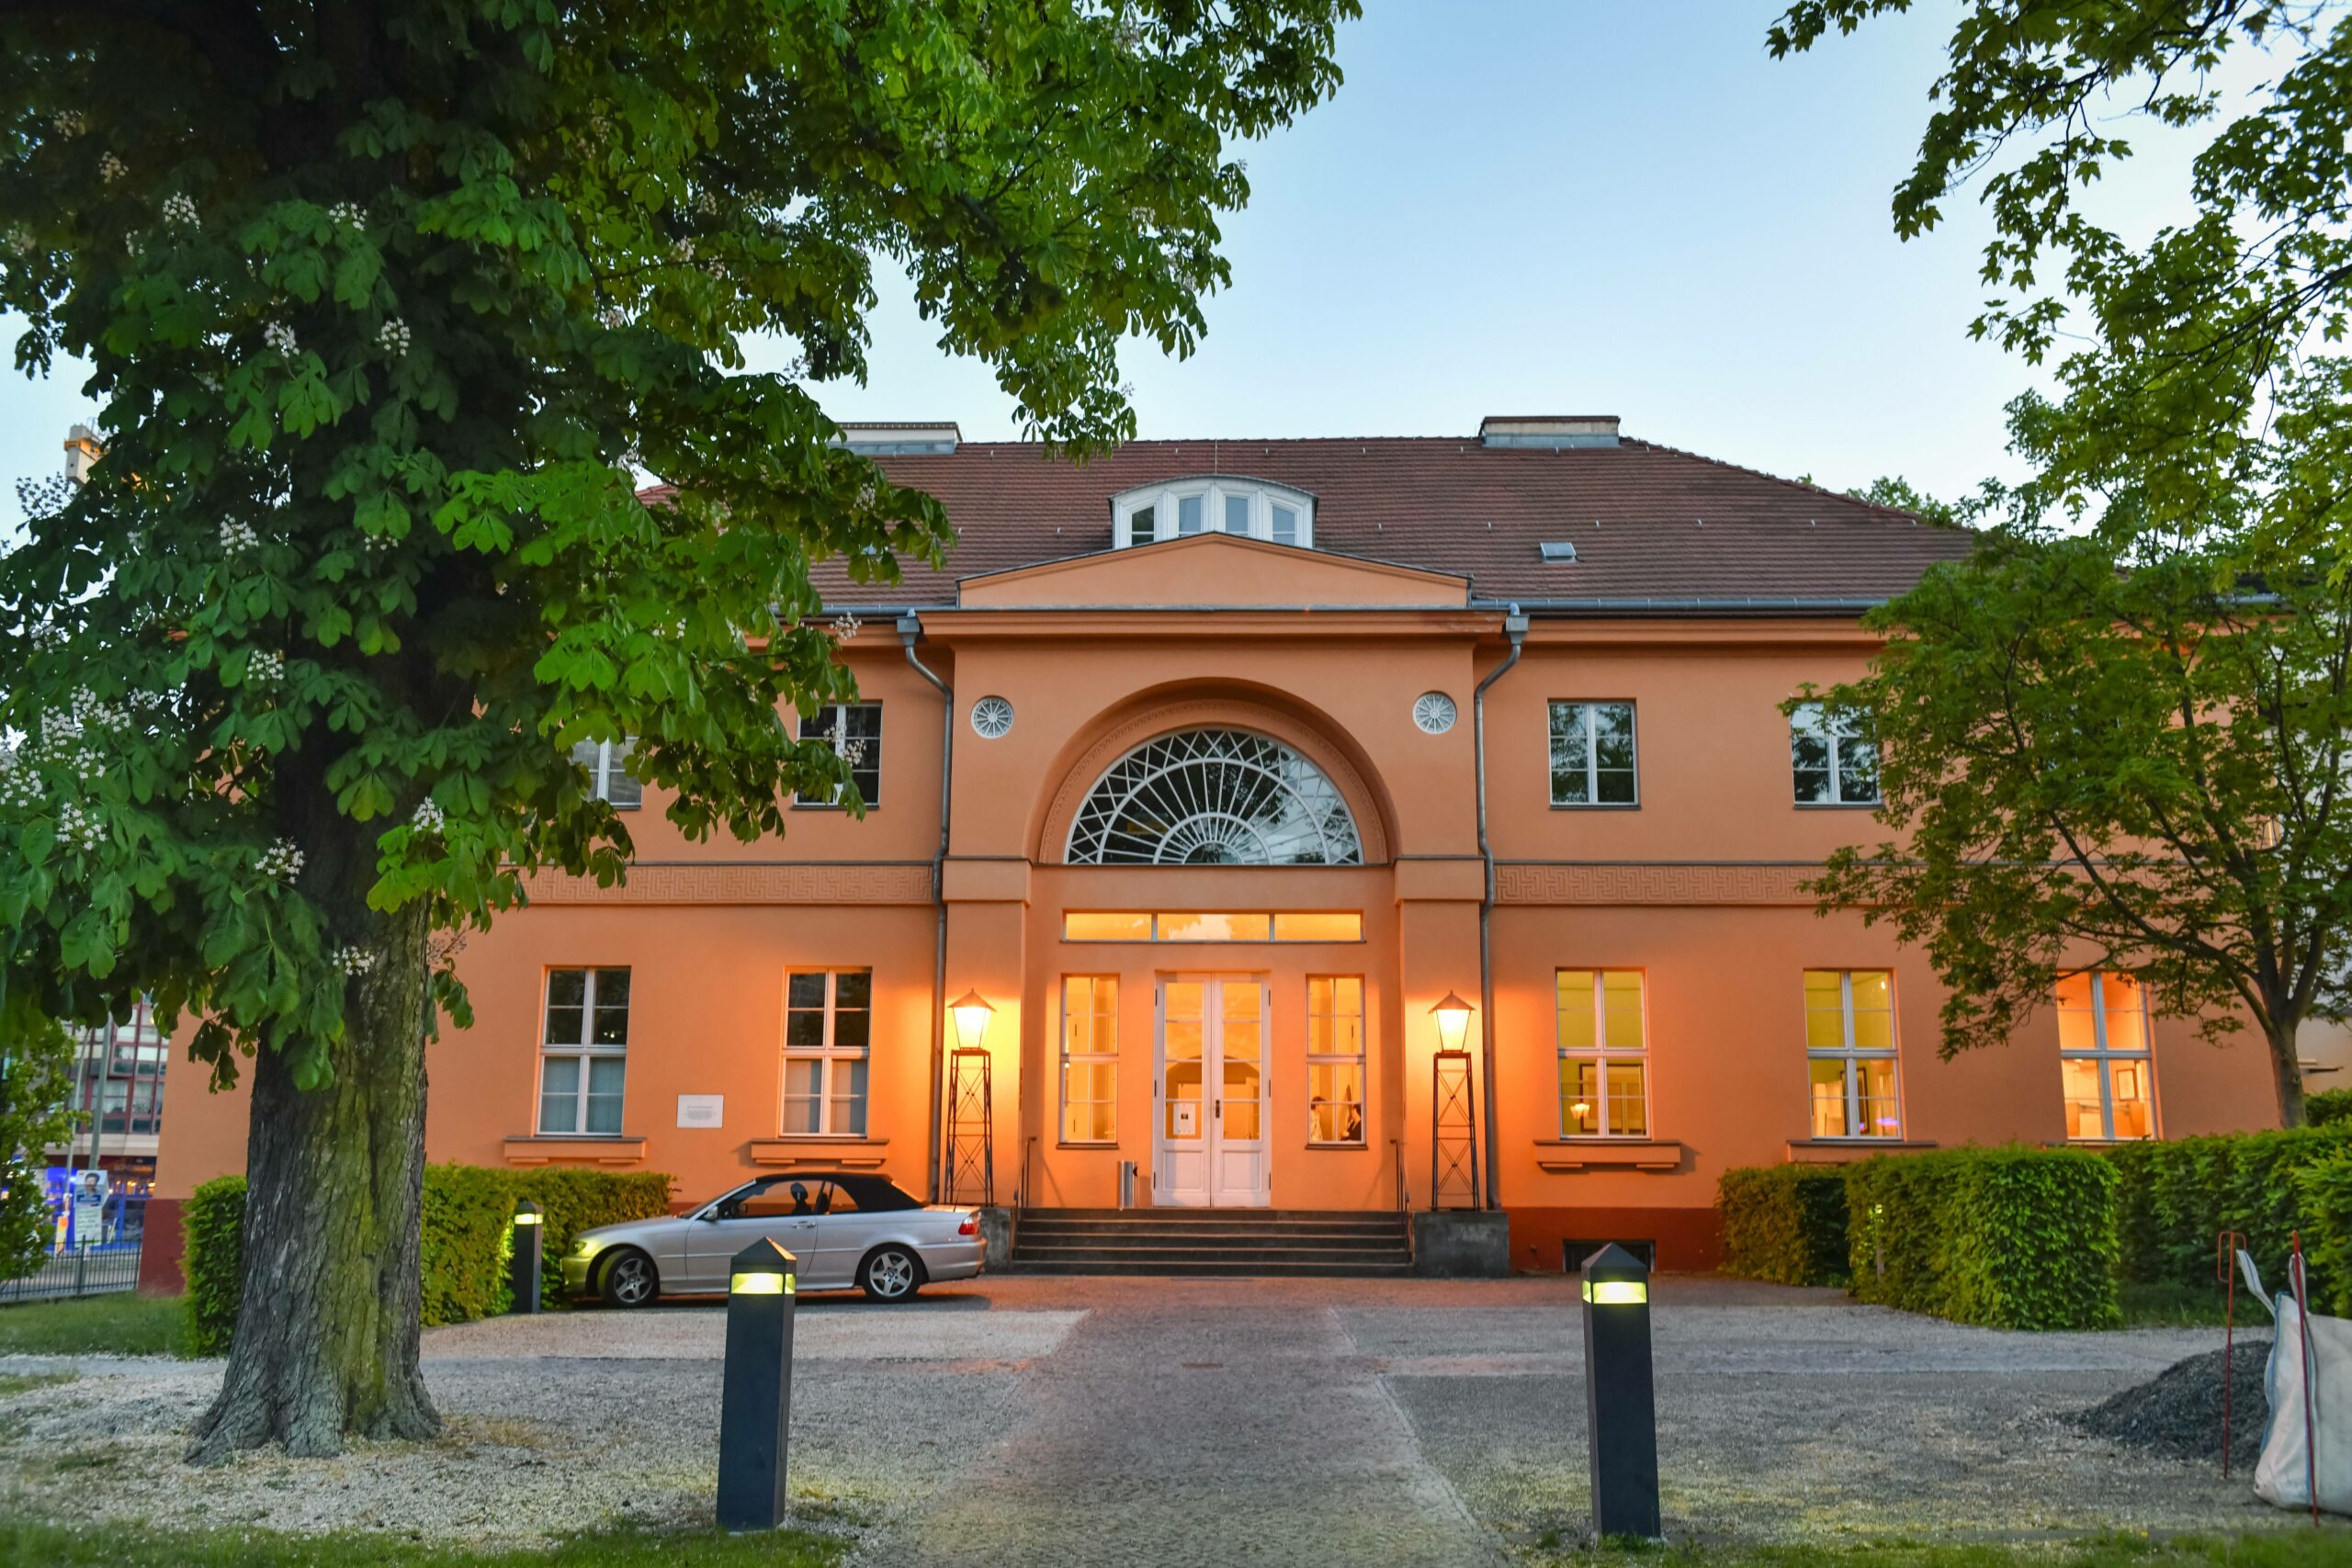 Das Gutshaus aus dem 19. Jahrhundert wurde schon vielseitig genutzt. Hier finden regelmäßig Veranstaltungen und Lesungen statt. Foto: Imago/Schöning